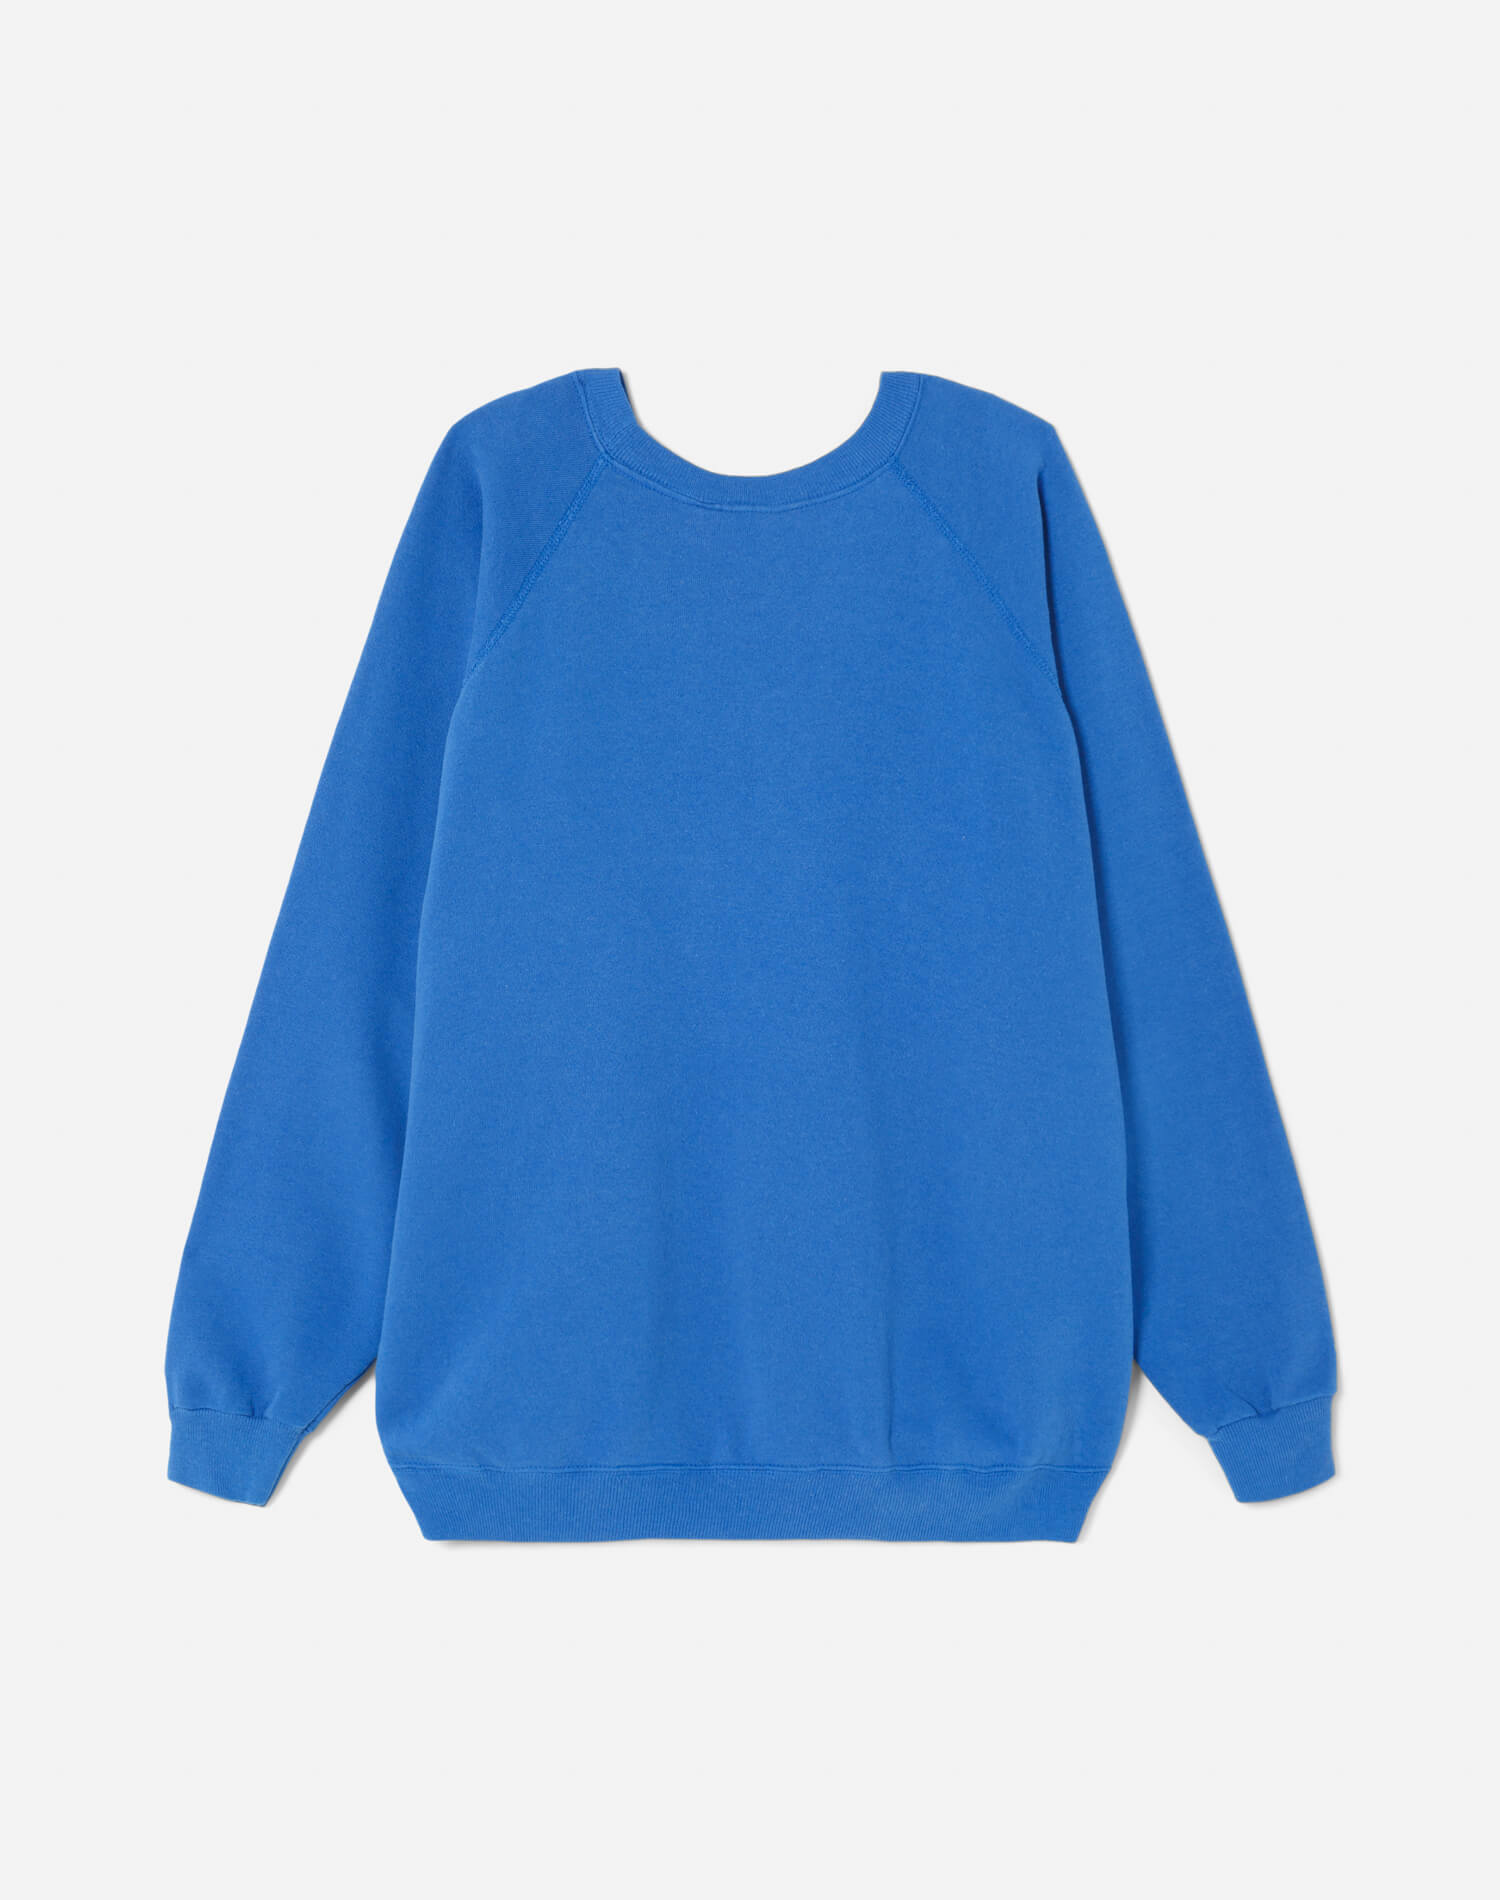 Upcycled "Aspen" Sweatshirt - Blue